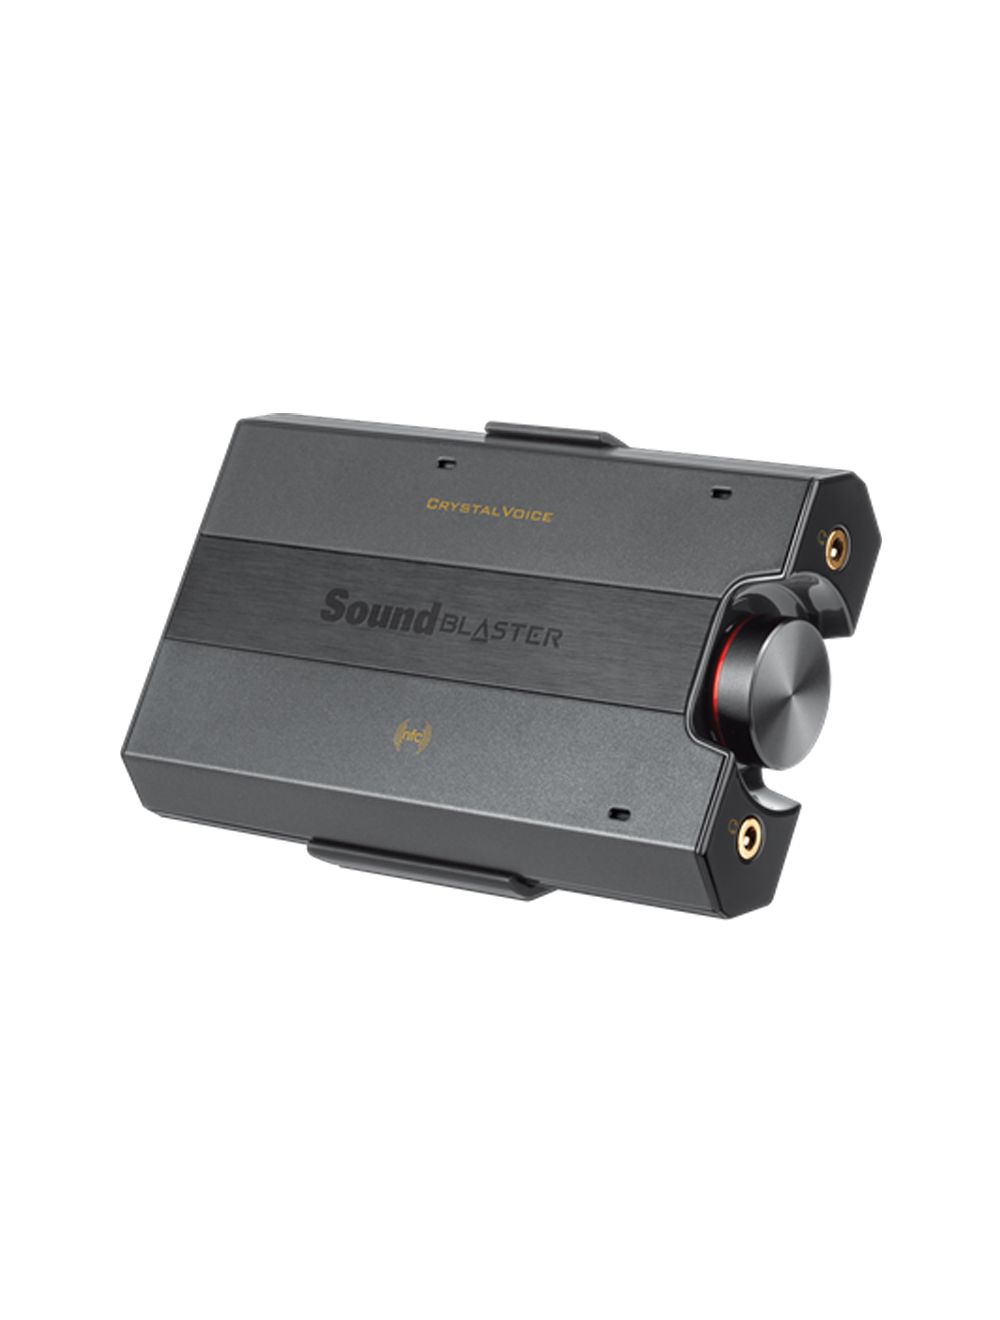 sound blaster z dts decoder audio stream in use